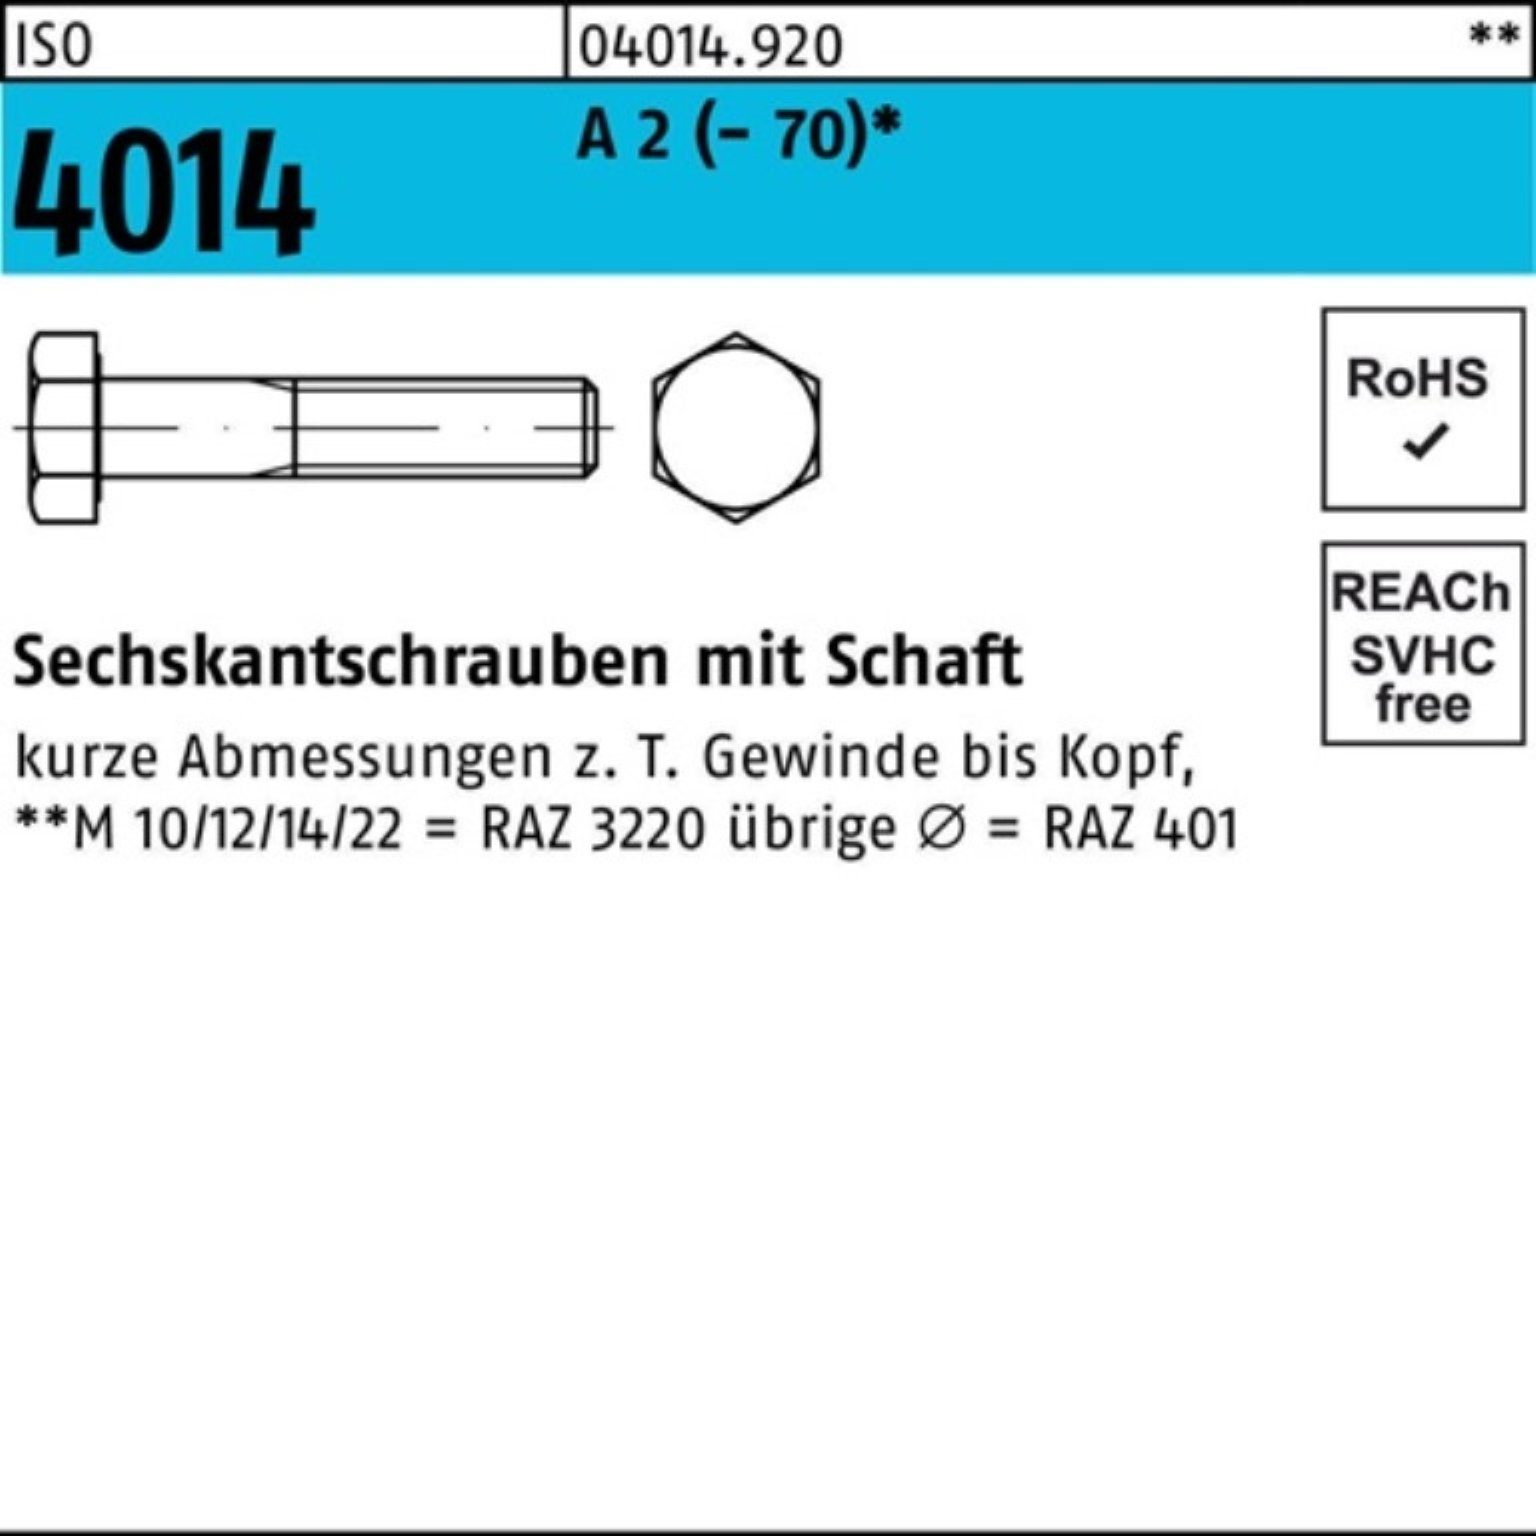 Bufab Sechskantschraube 100er Pack Sechskantschraube ISO 4014 Schaft M14x 150 A 2 (70) 1 St